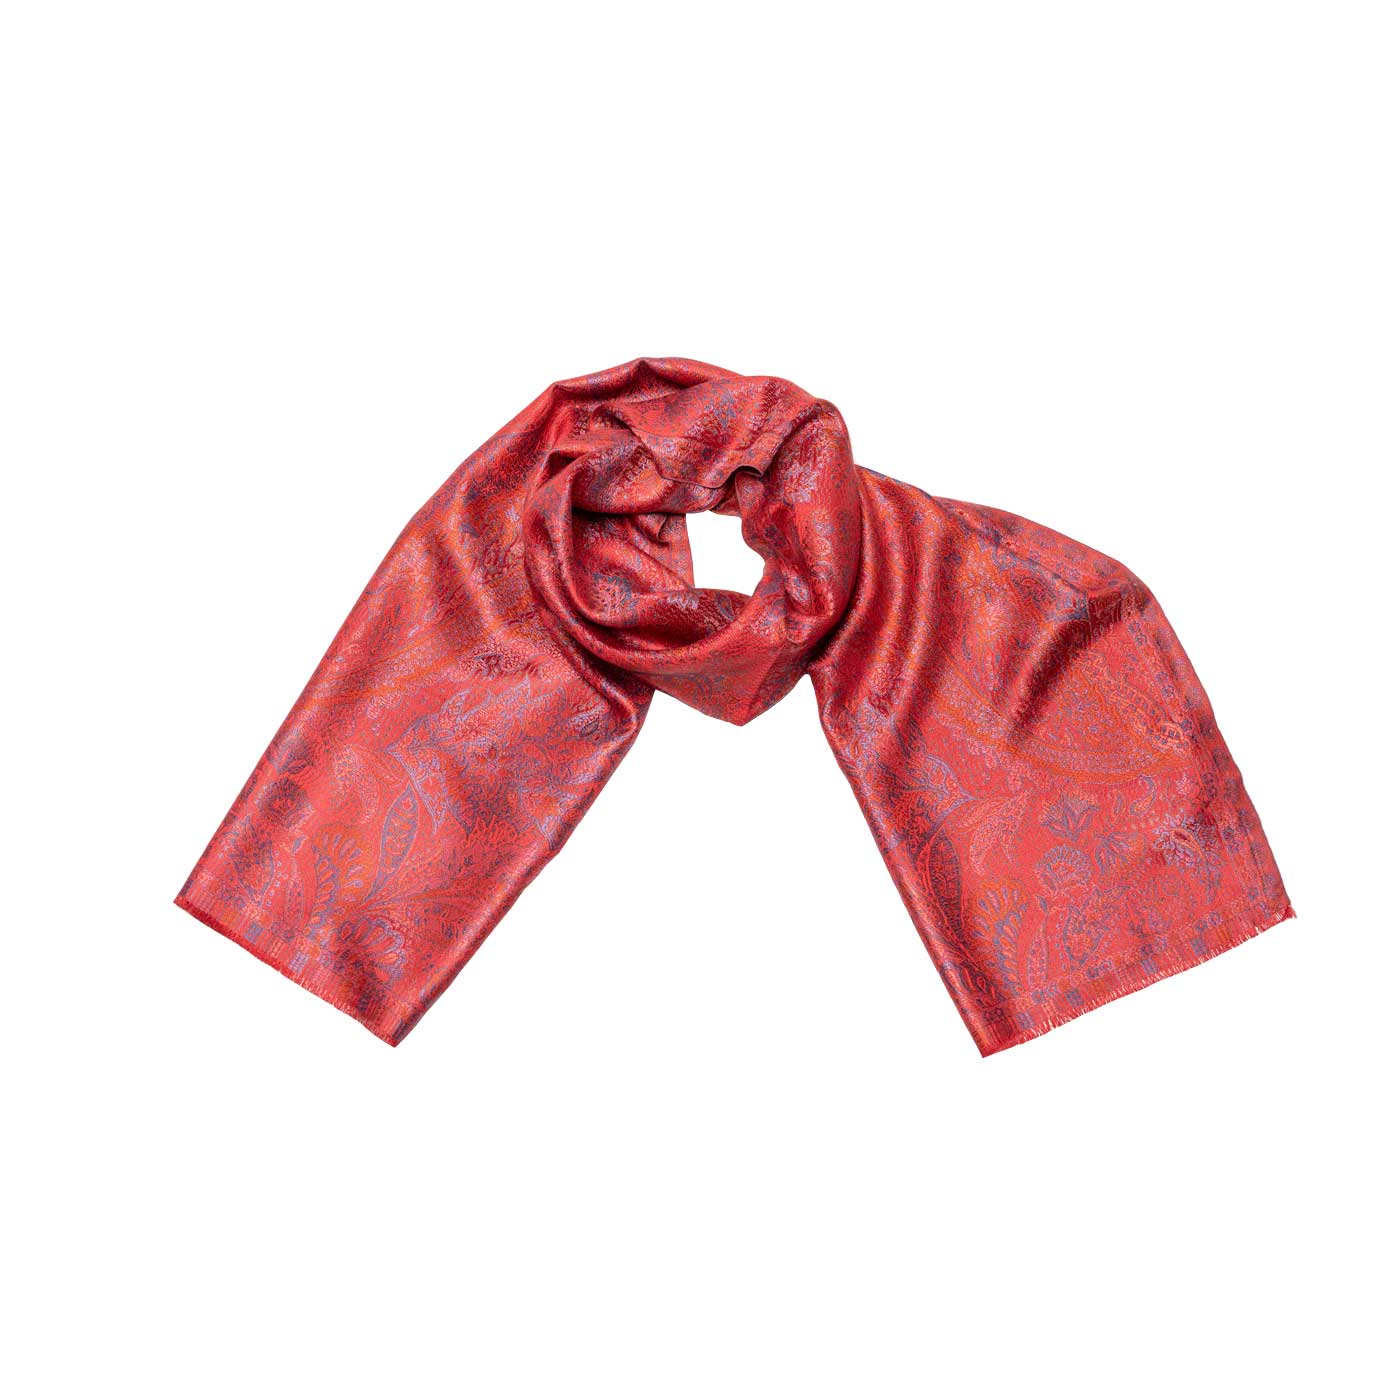 Seidenschal in Rot mit Paisley - Luxus & Stil-Shirin Sehan – shirinsehan